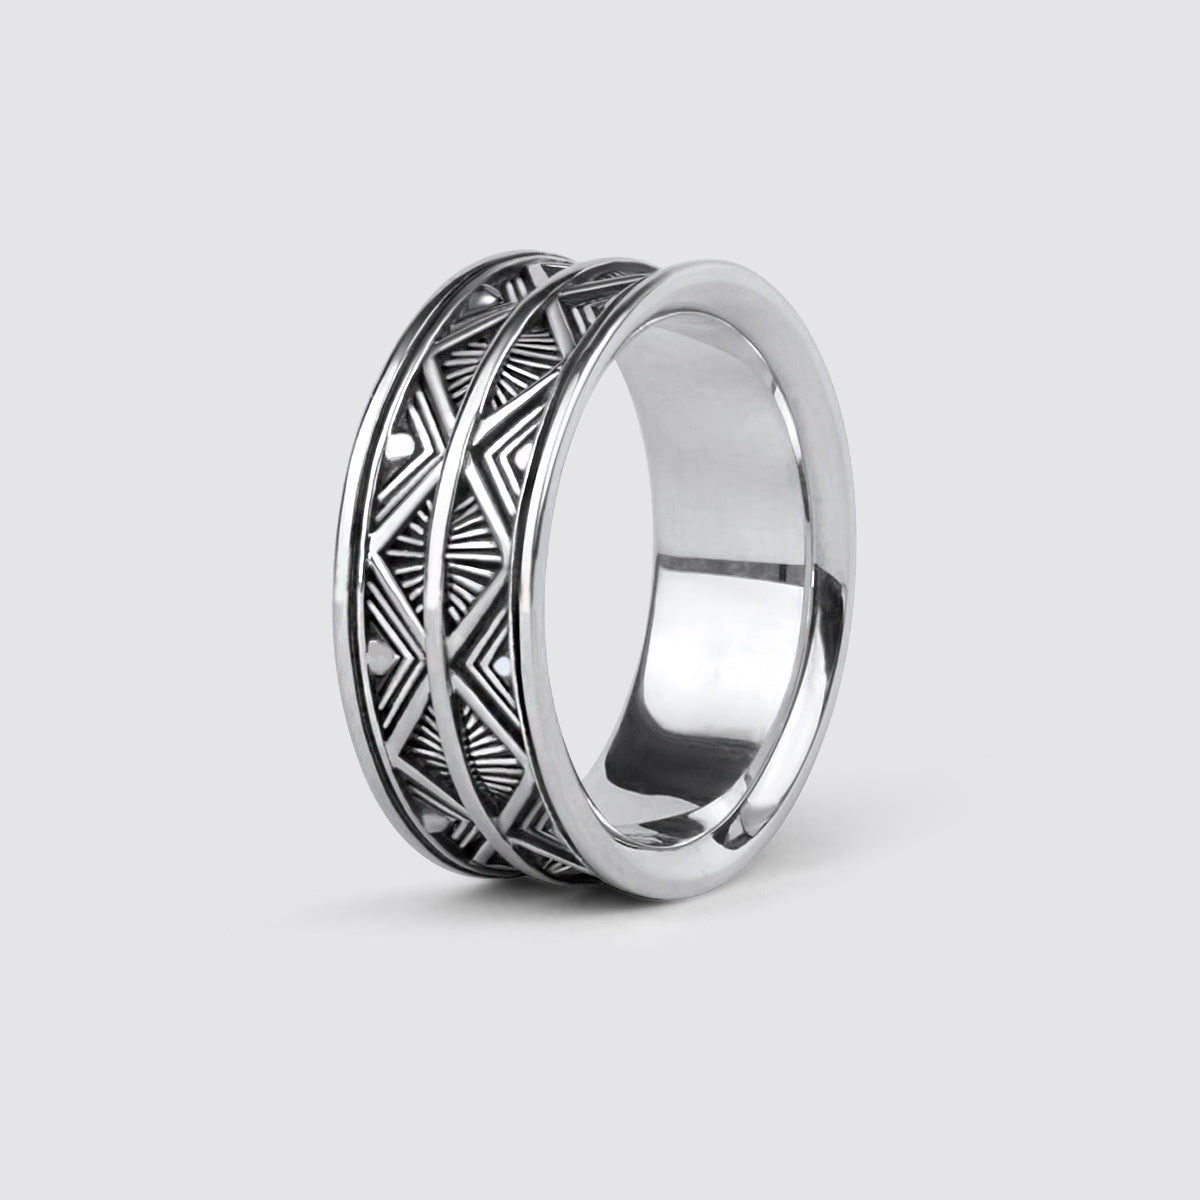 Bazel - Geoxideerd Sterling Zilveren Ring 10mm